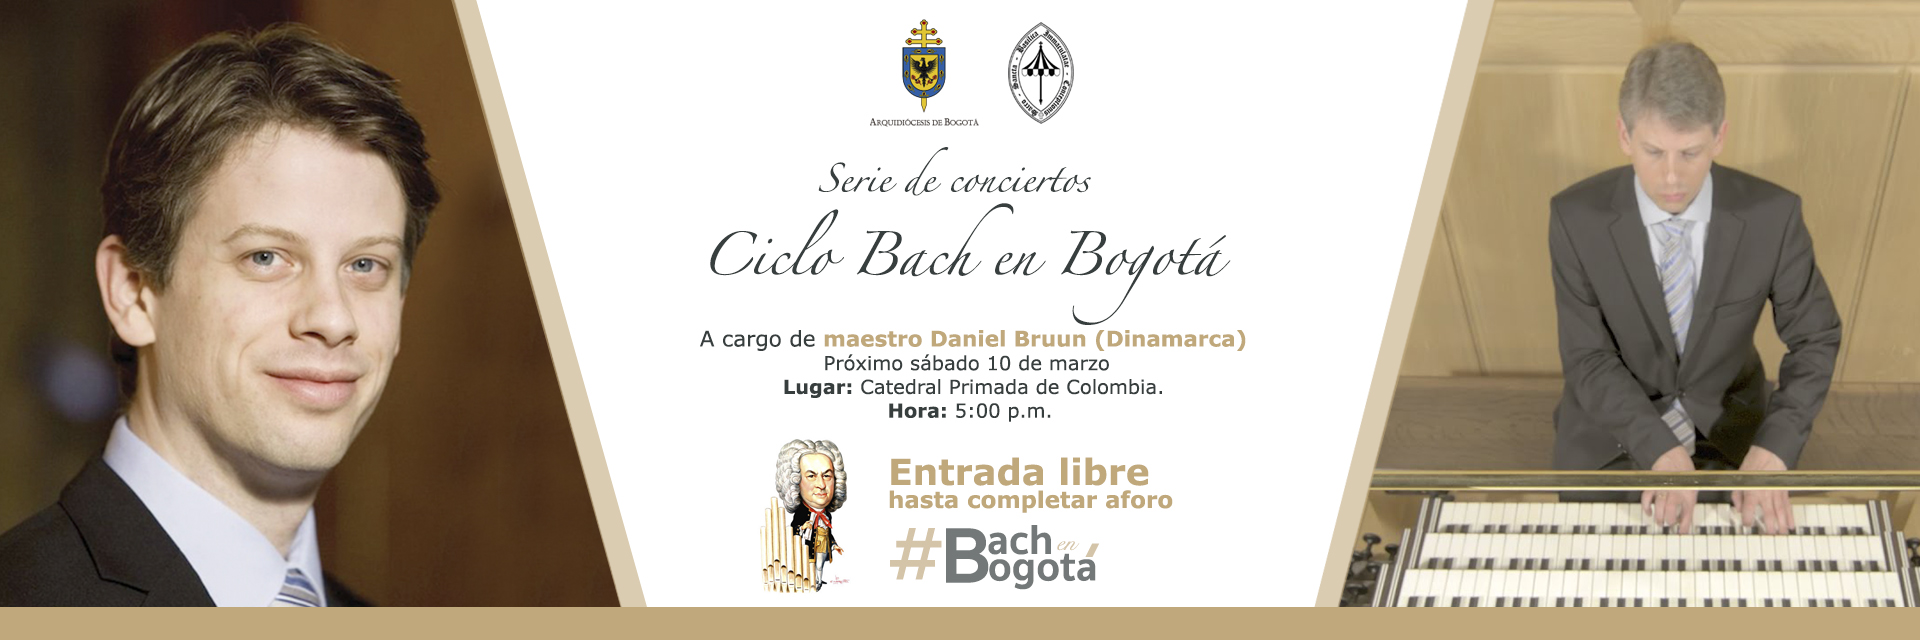 Bruun en concierto en la Catedral Primada de Bogotá